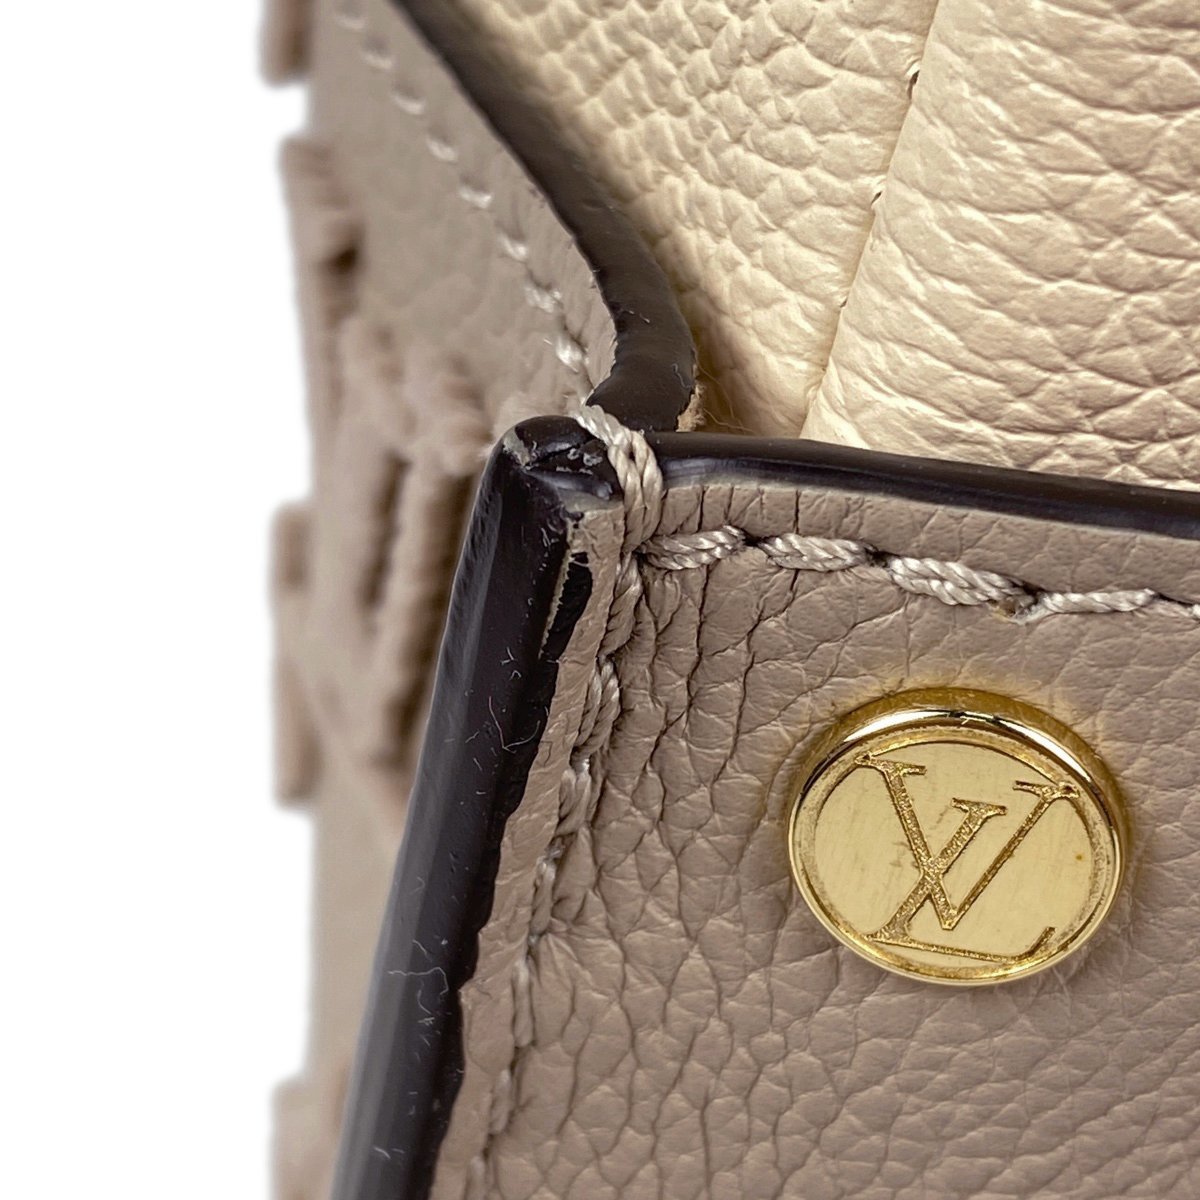  Louis * Vuitton Louis Vuitton on мой боковой 2WAY сумка на плечо ручная сумочка кожа галет M53825 женский [ б/у ]